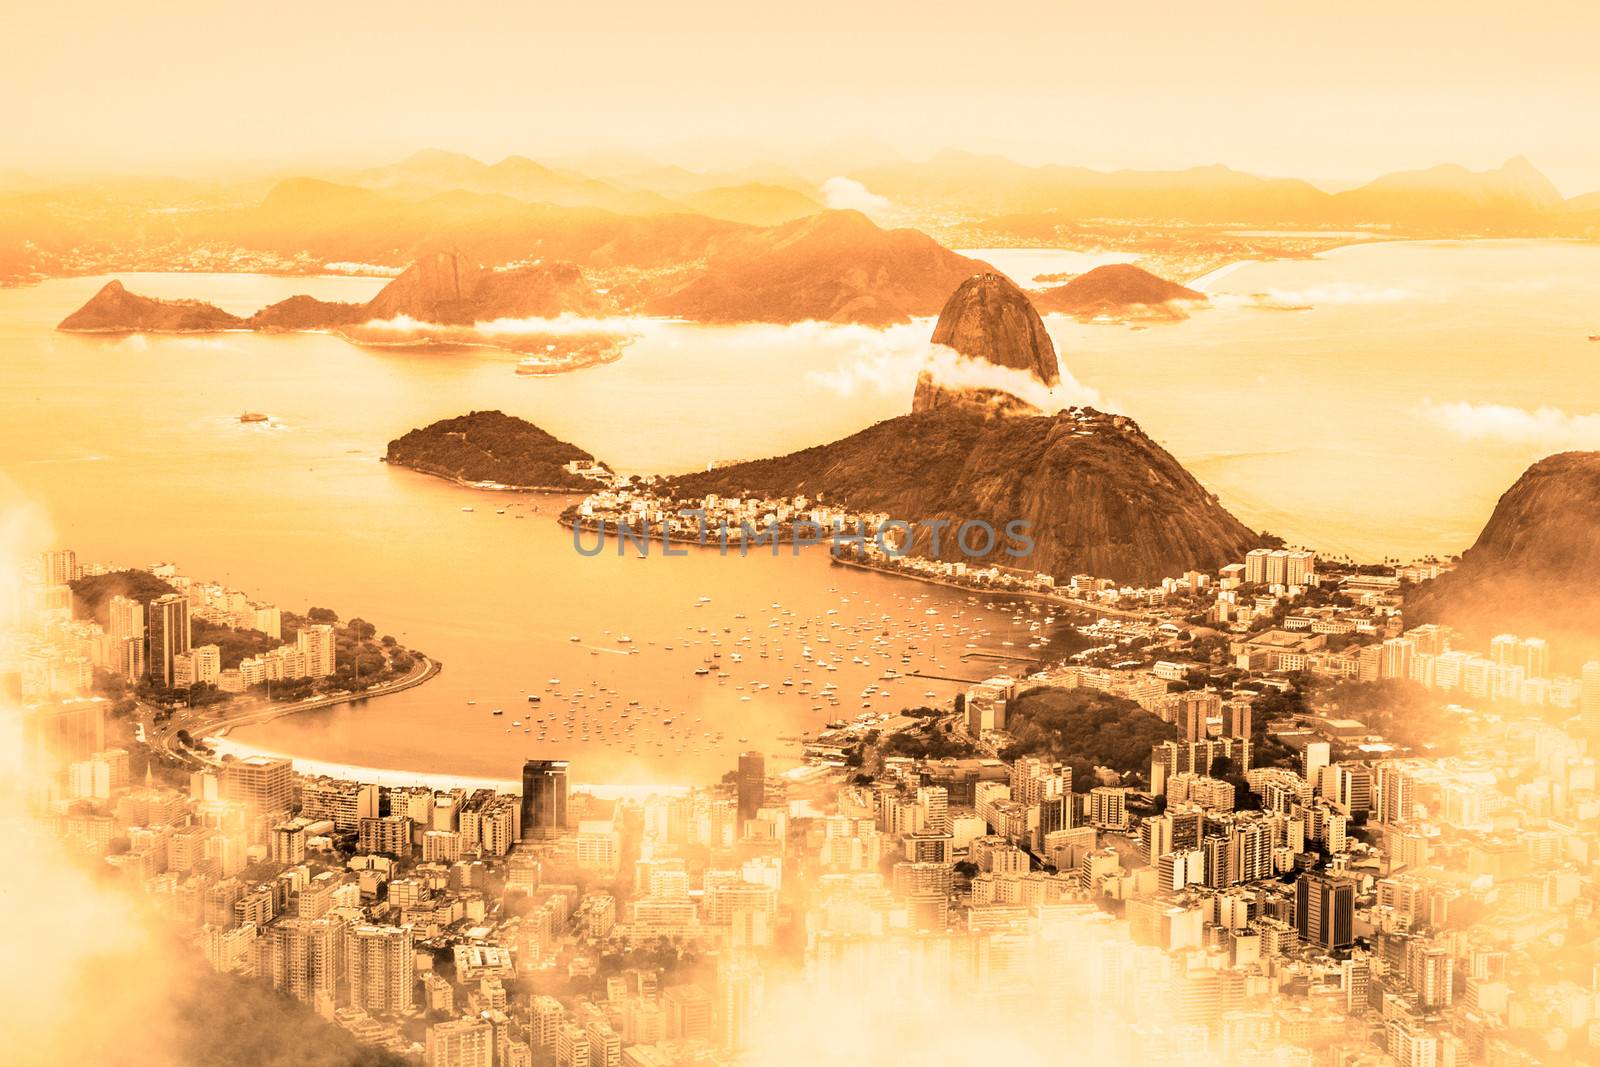 Rio de Janeiro, Brazil  by kasto